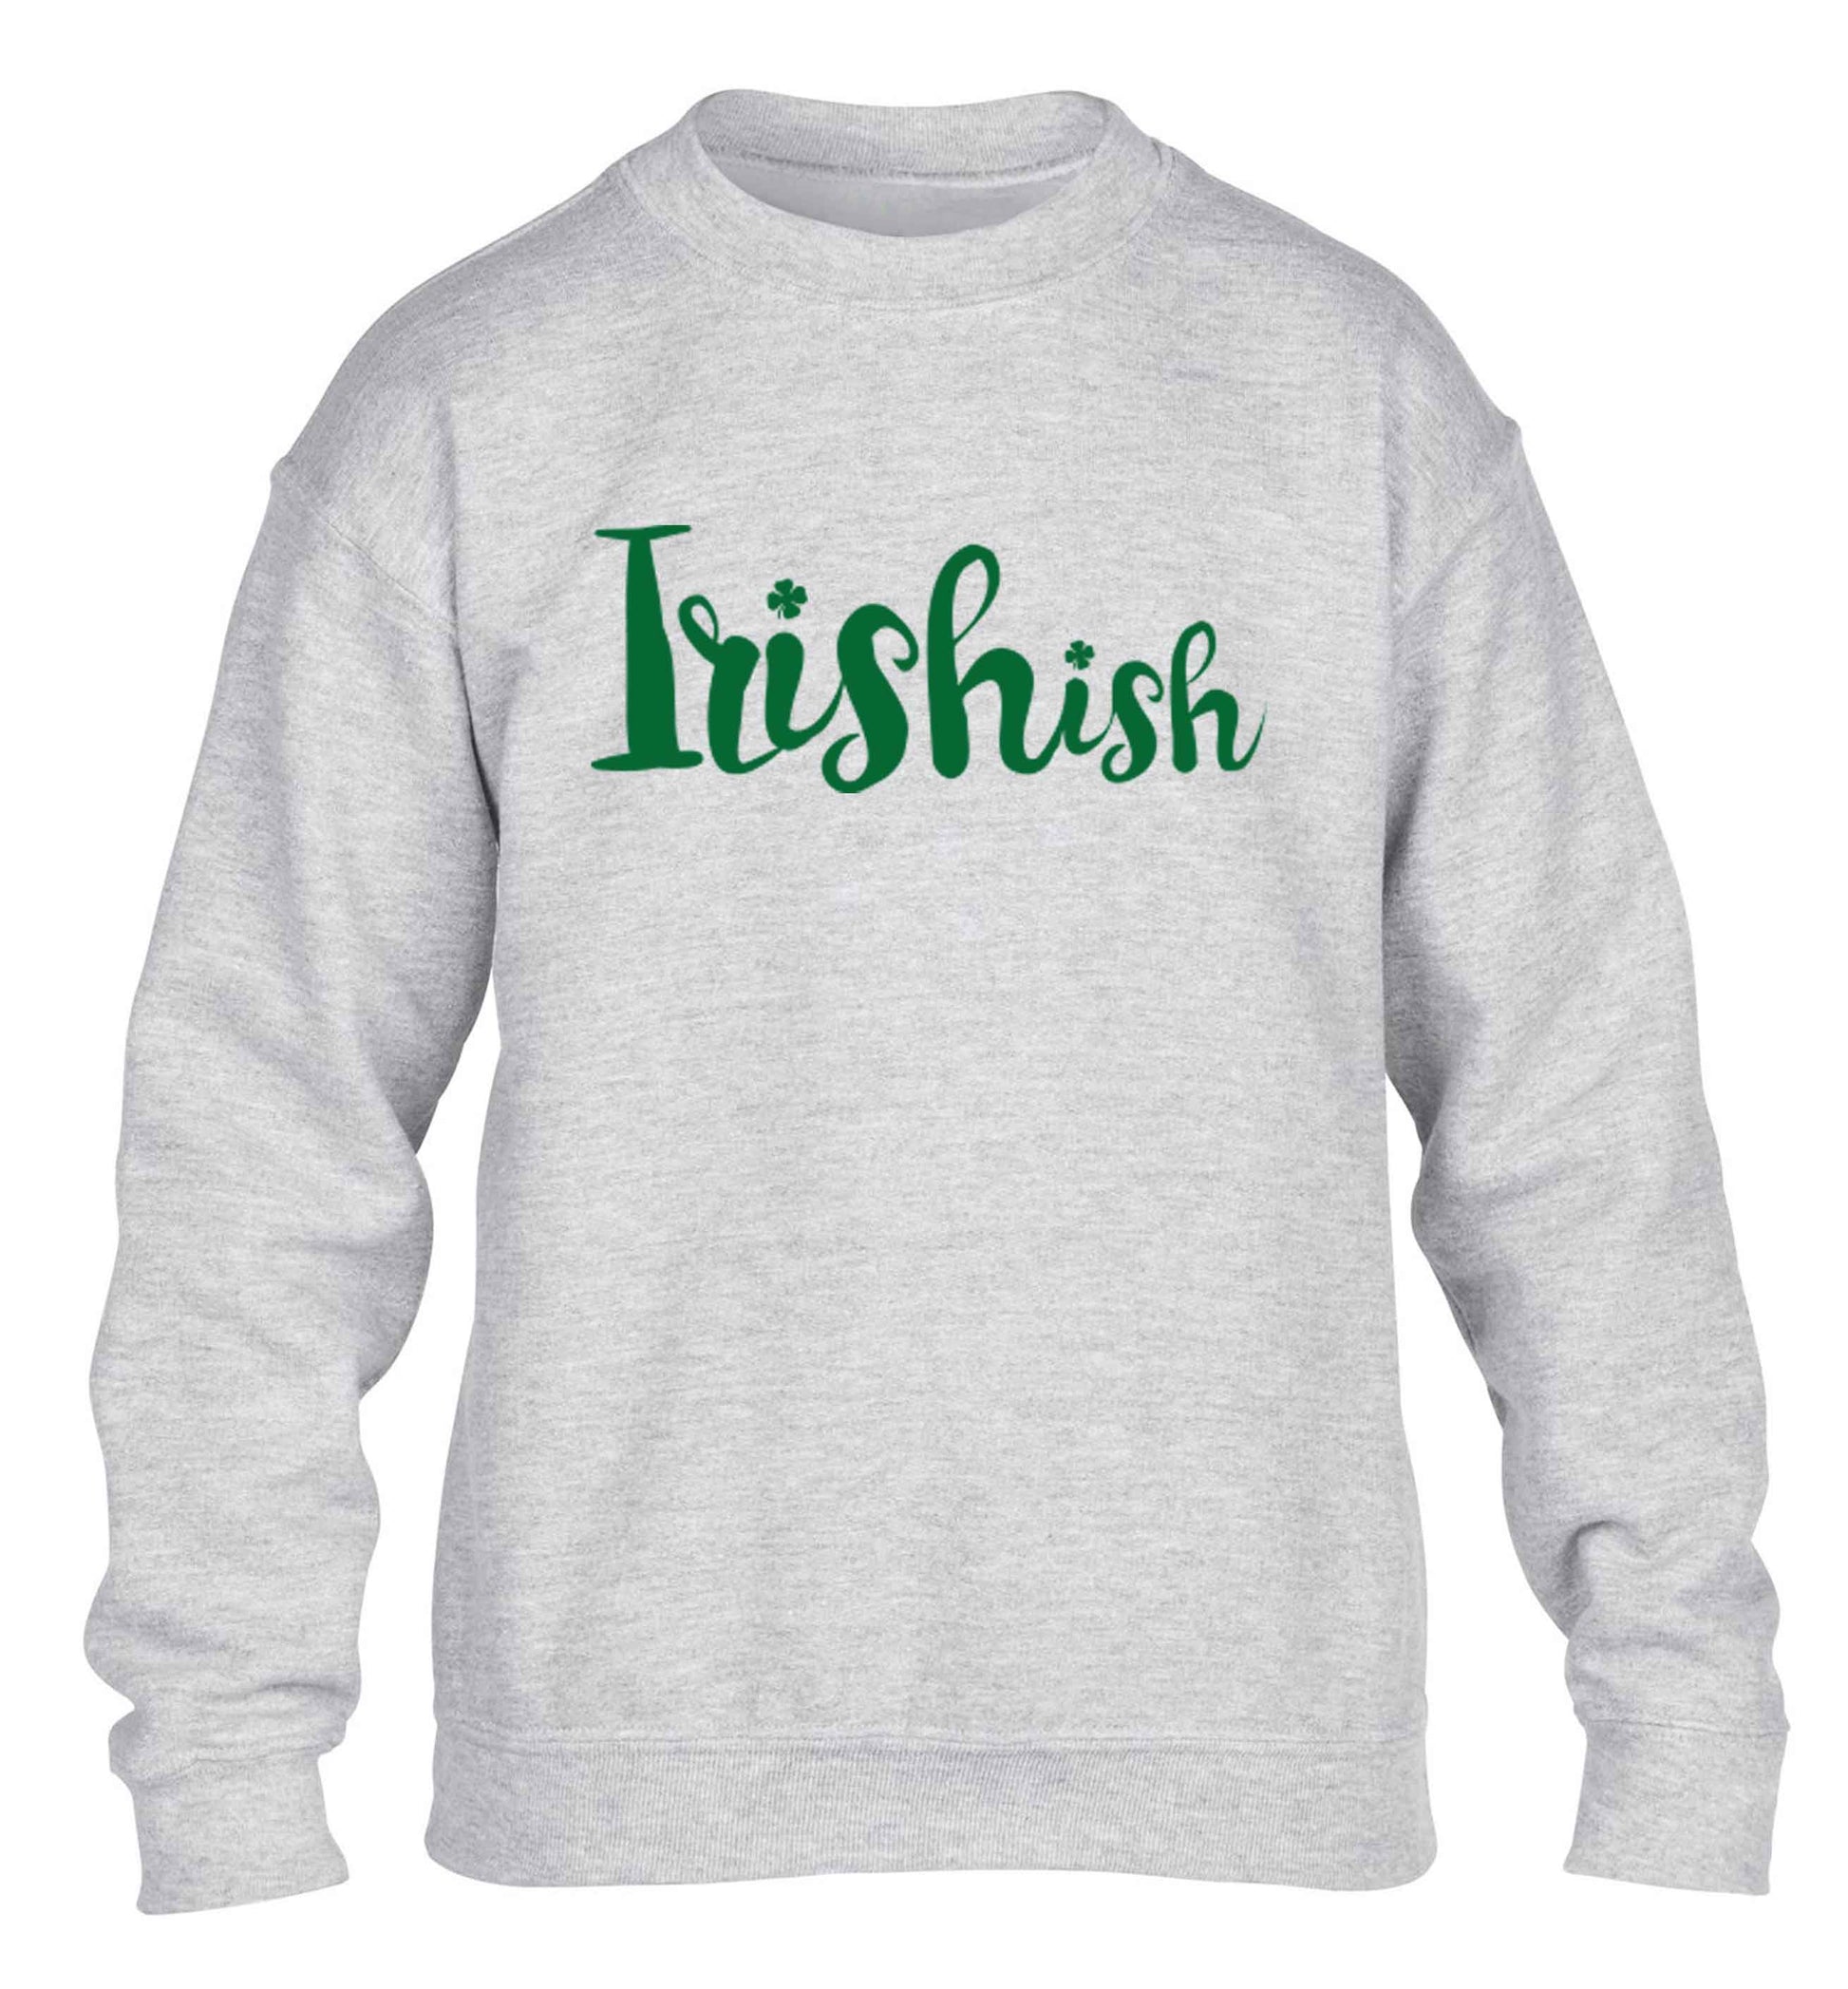 Irishish children's grey sweater 12-13 Years